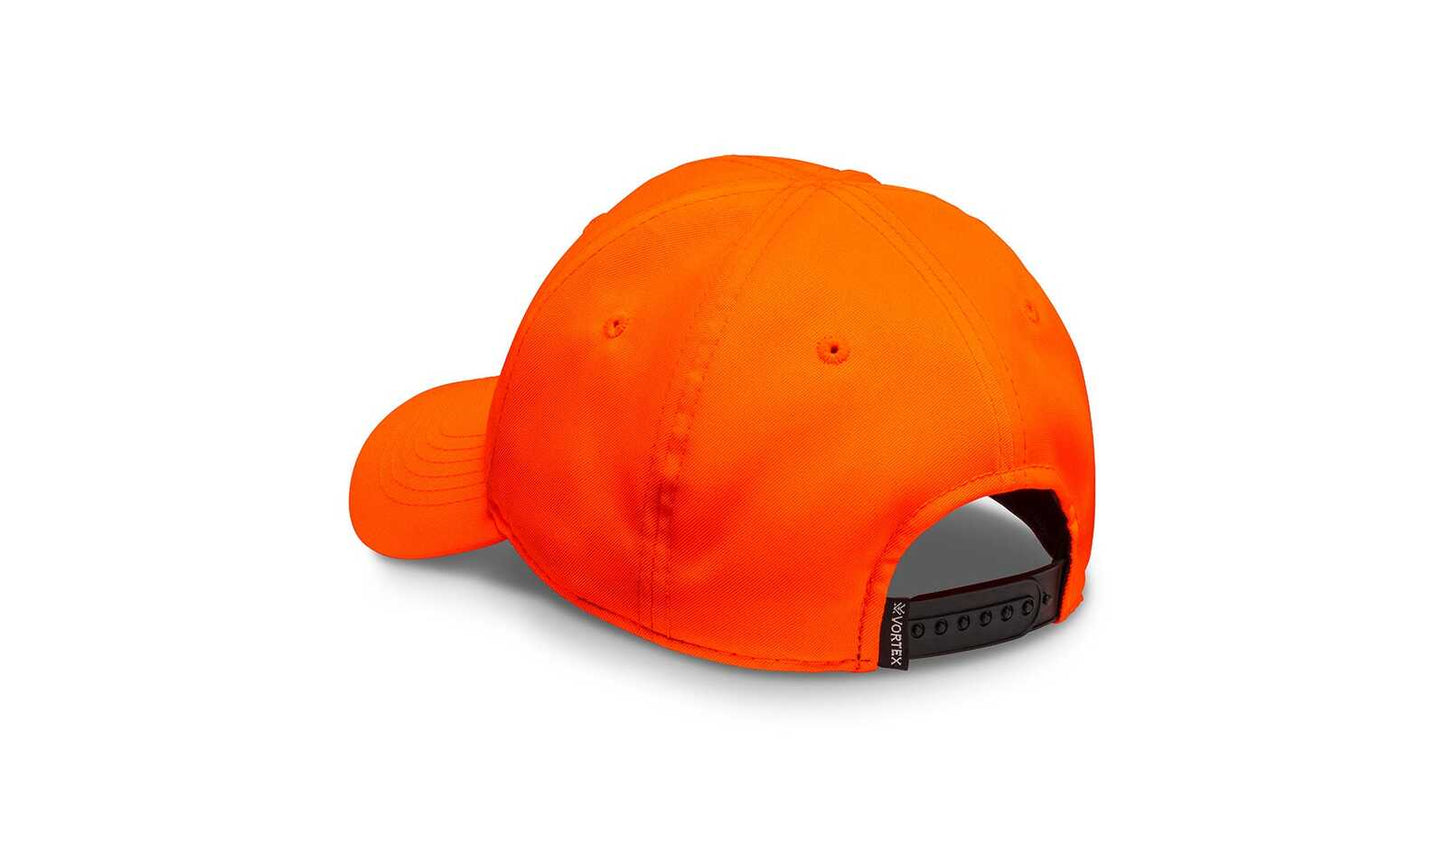 Vortex Vortex Optics Mens Traditions Hunting Outdoor Cap - Blaze Orange #vo12045Blz Dark Orange